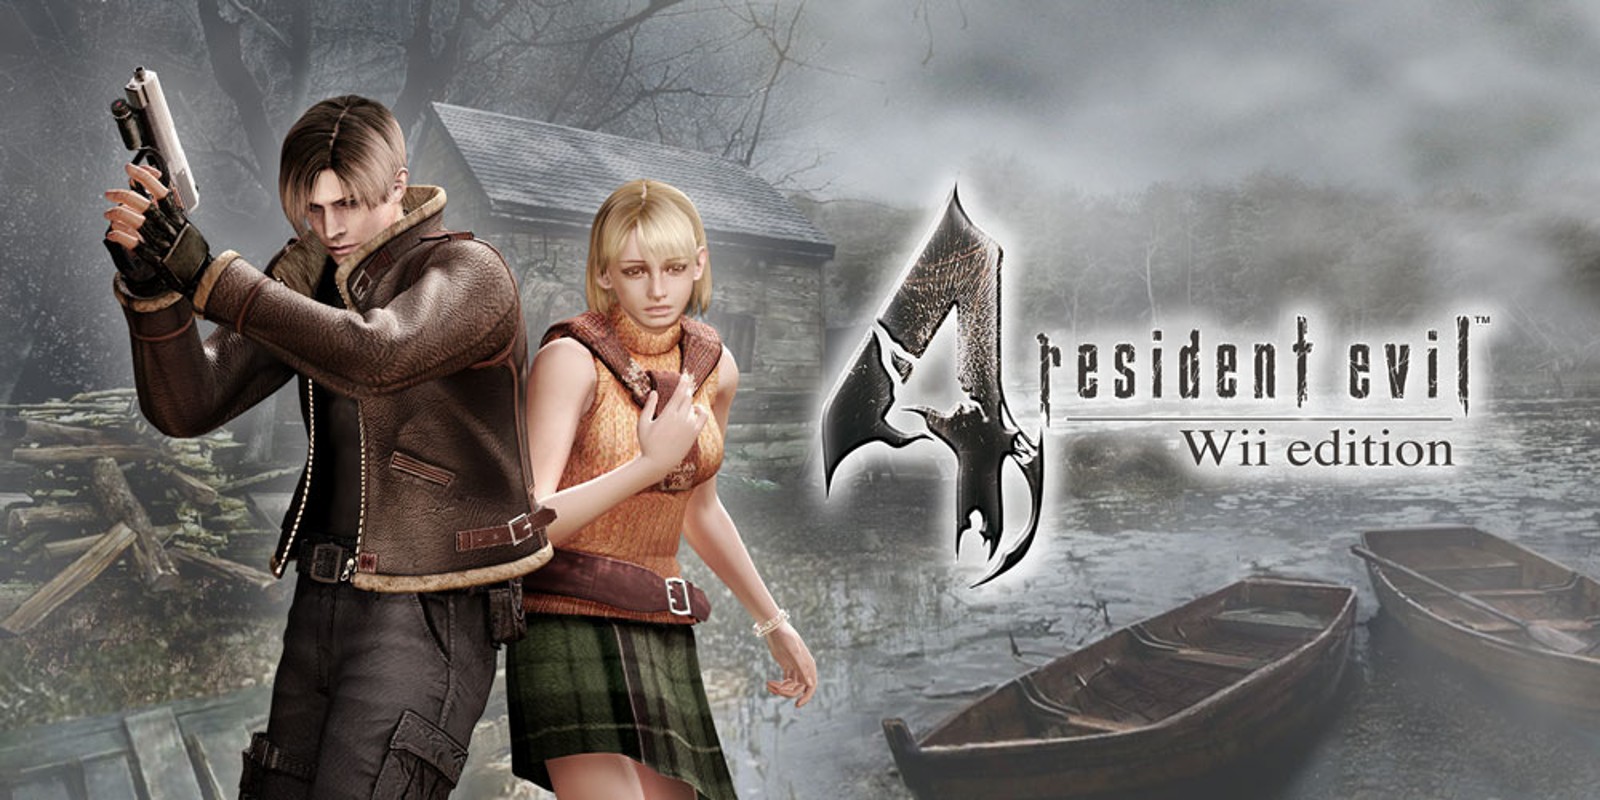 Прохождение игры Resident Evil 4 - Ultimate HD Edition # 30 (Русская версия игры) PC - Ver. HD Full.